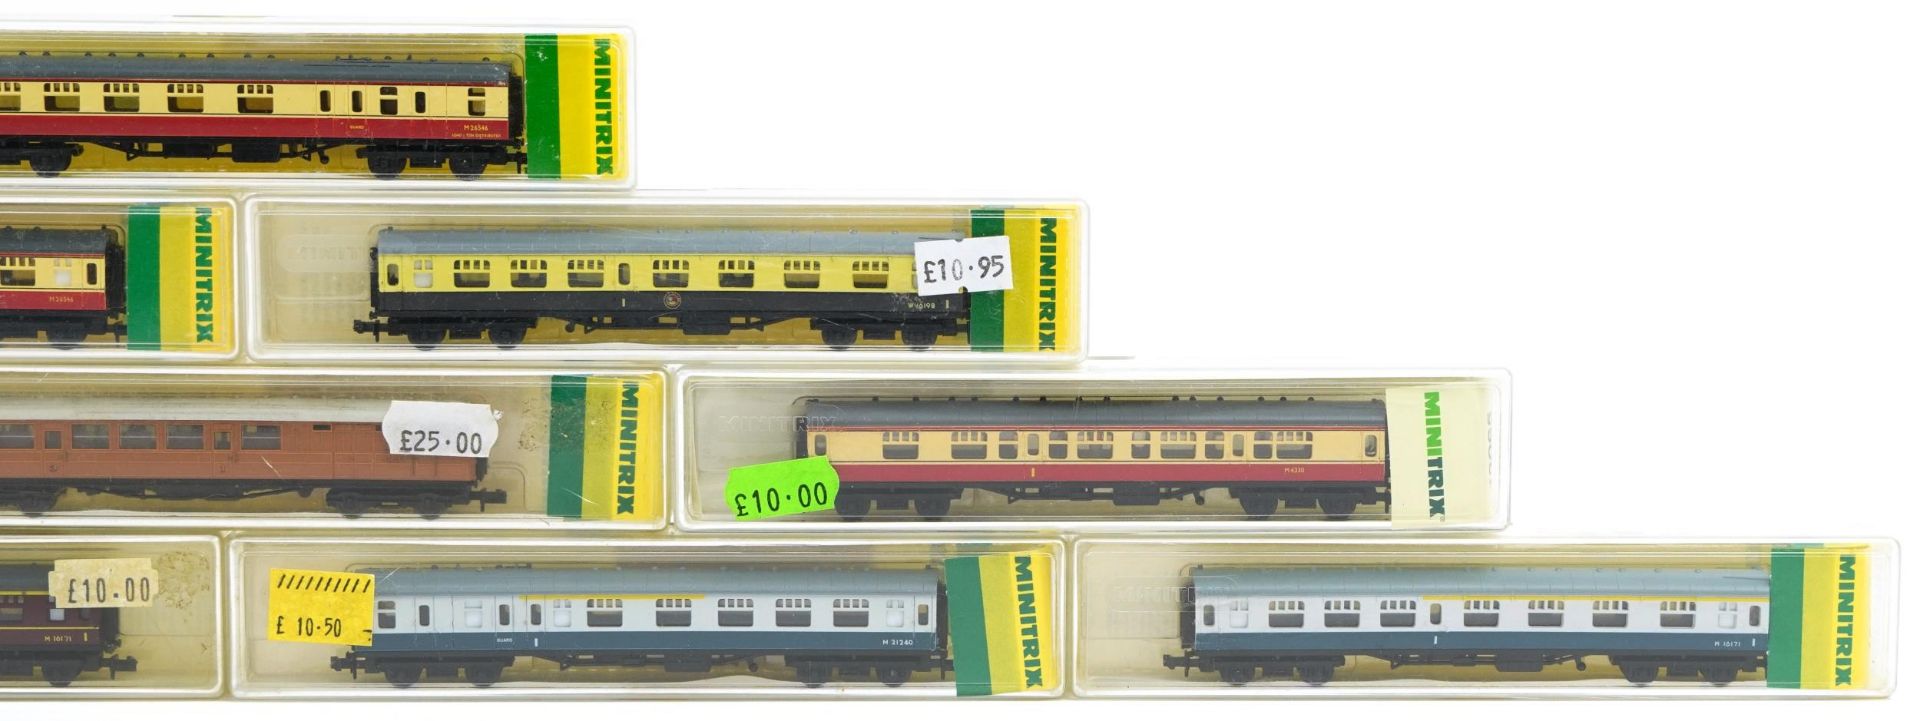 Ten Minitrix N gauge model railway carriages with cases, numbers 13003, 13004, 13005, 13006, - Bild 4 aus 5